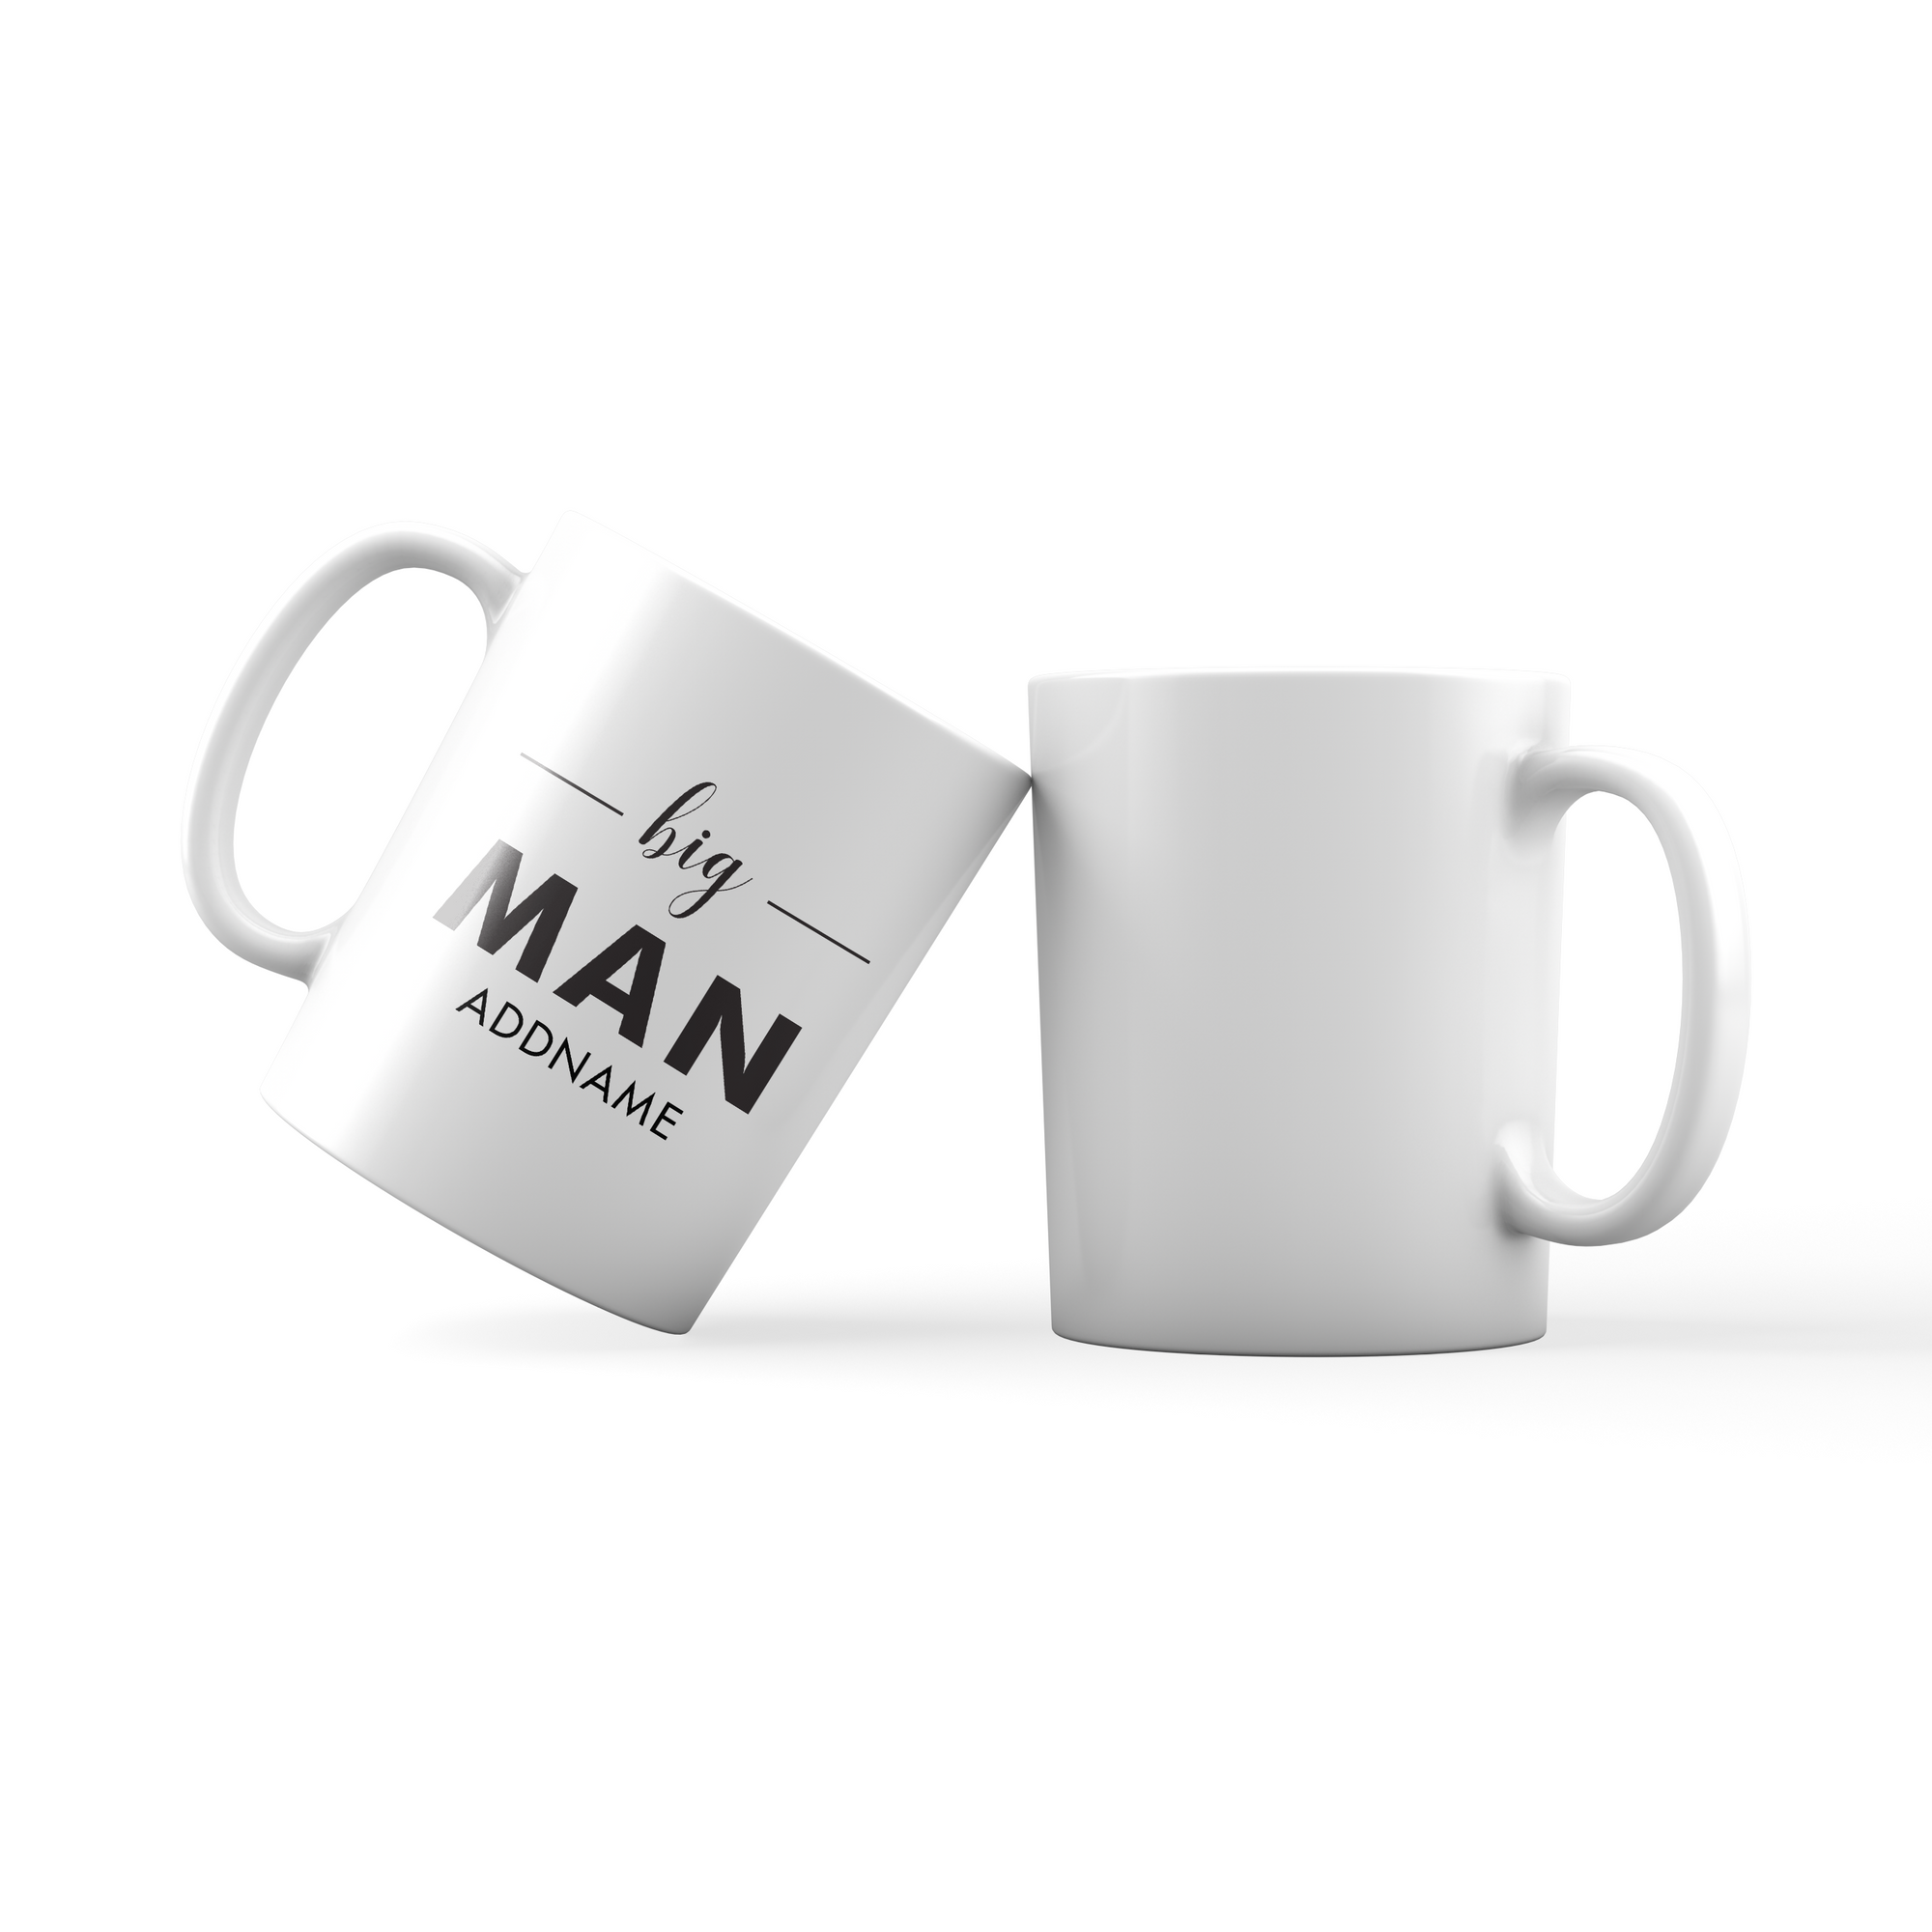 Big Man Addname Mug